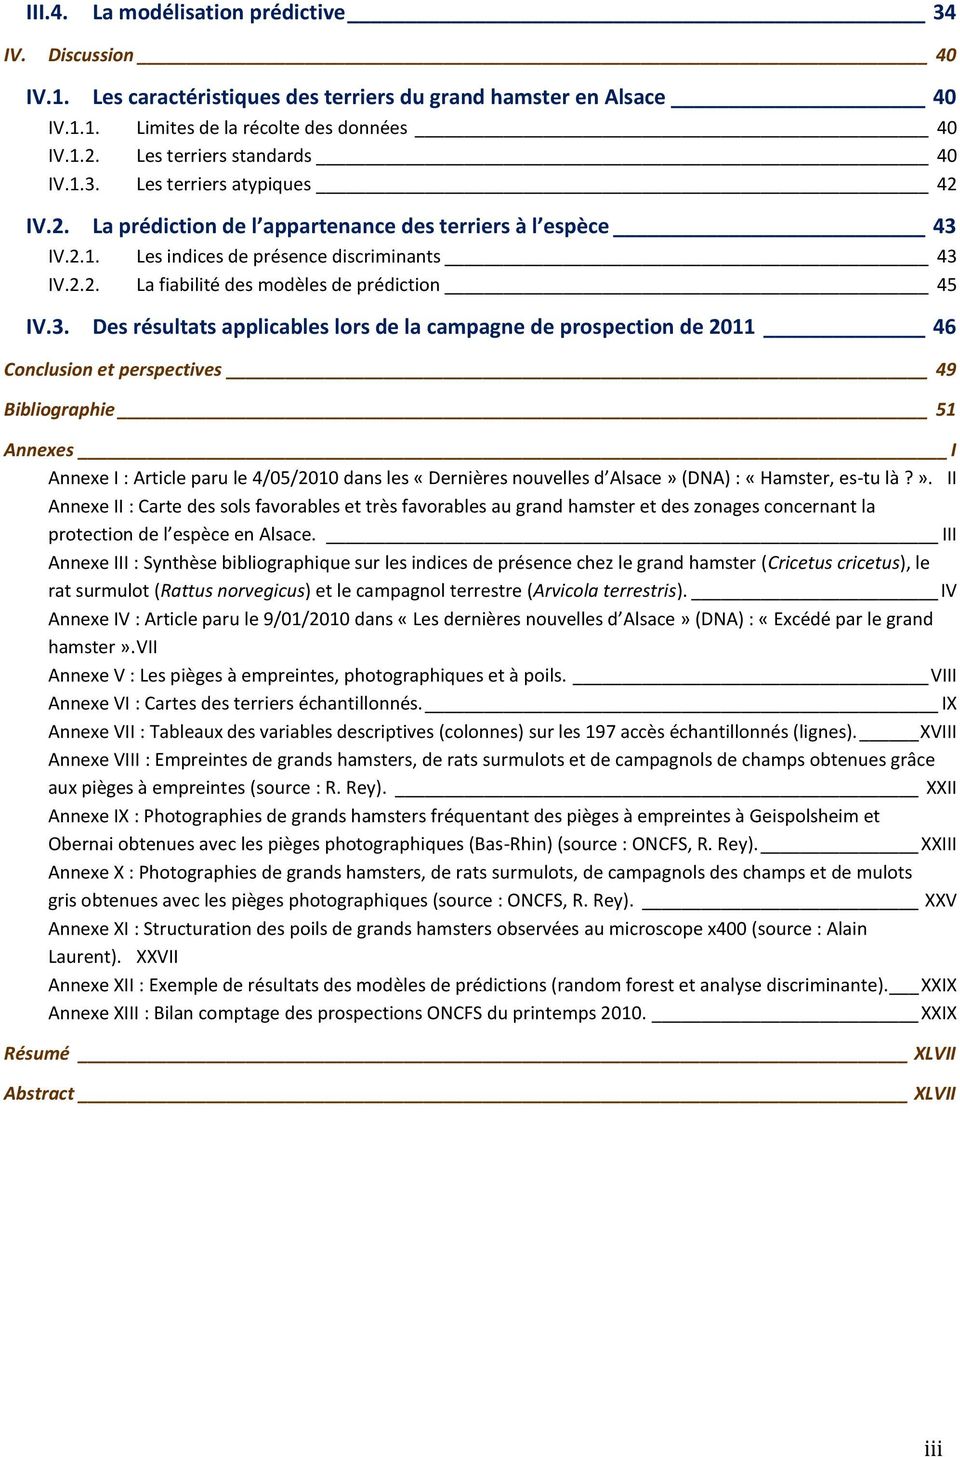 3. Des résultats applicables lors de la campagne de prospection de 2011 46 Conclusion et perspectives 49 Bibliographie 51 Annexes I Annexe I : Article paru le 4/05/2010 dans les «Dernières nouvelles